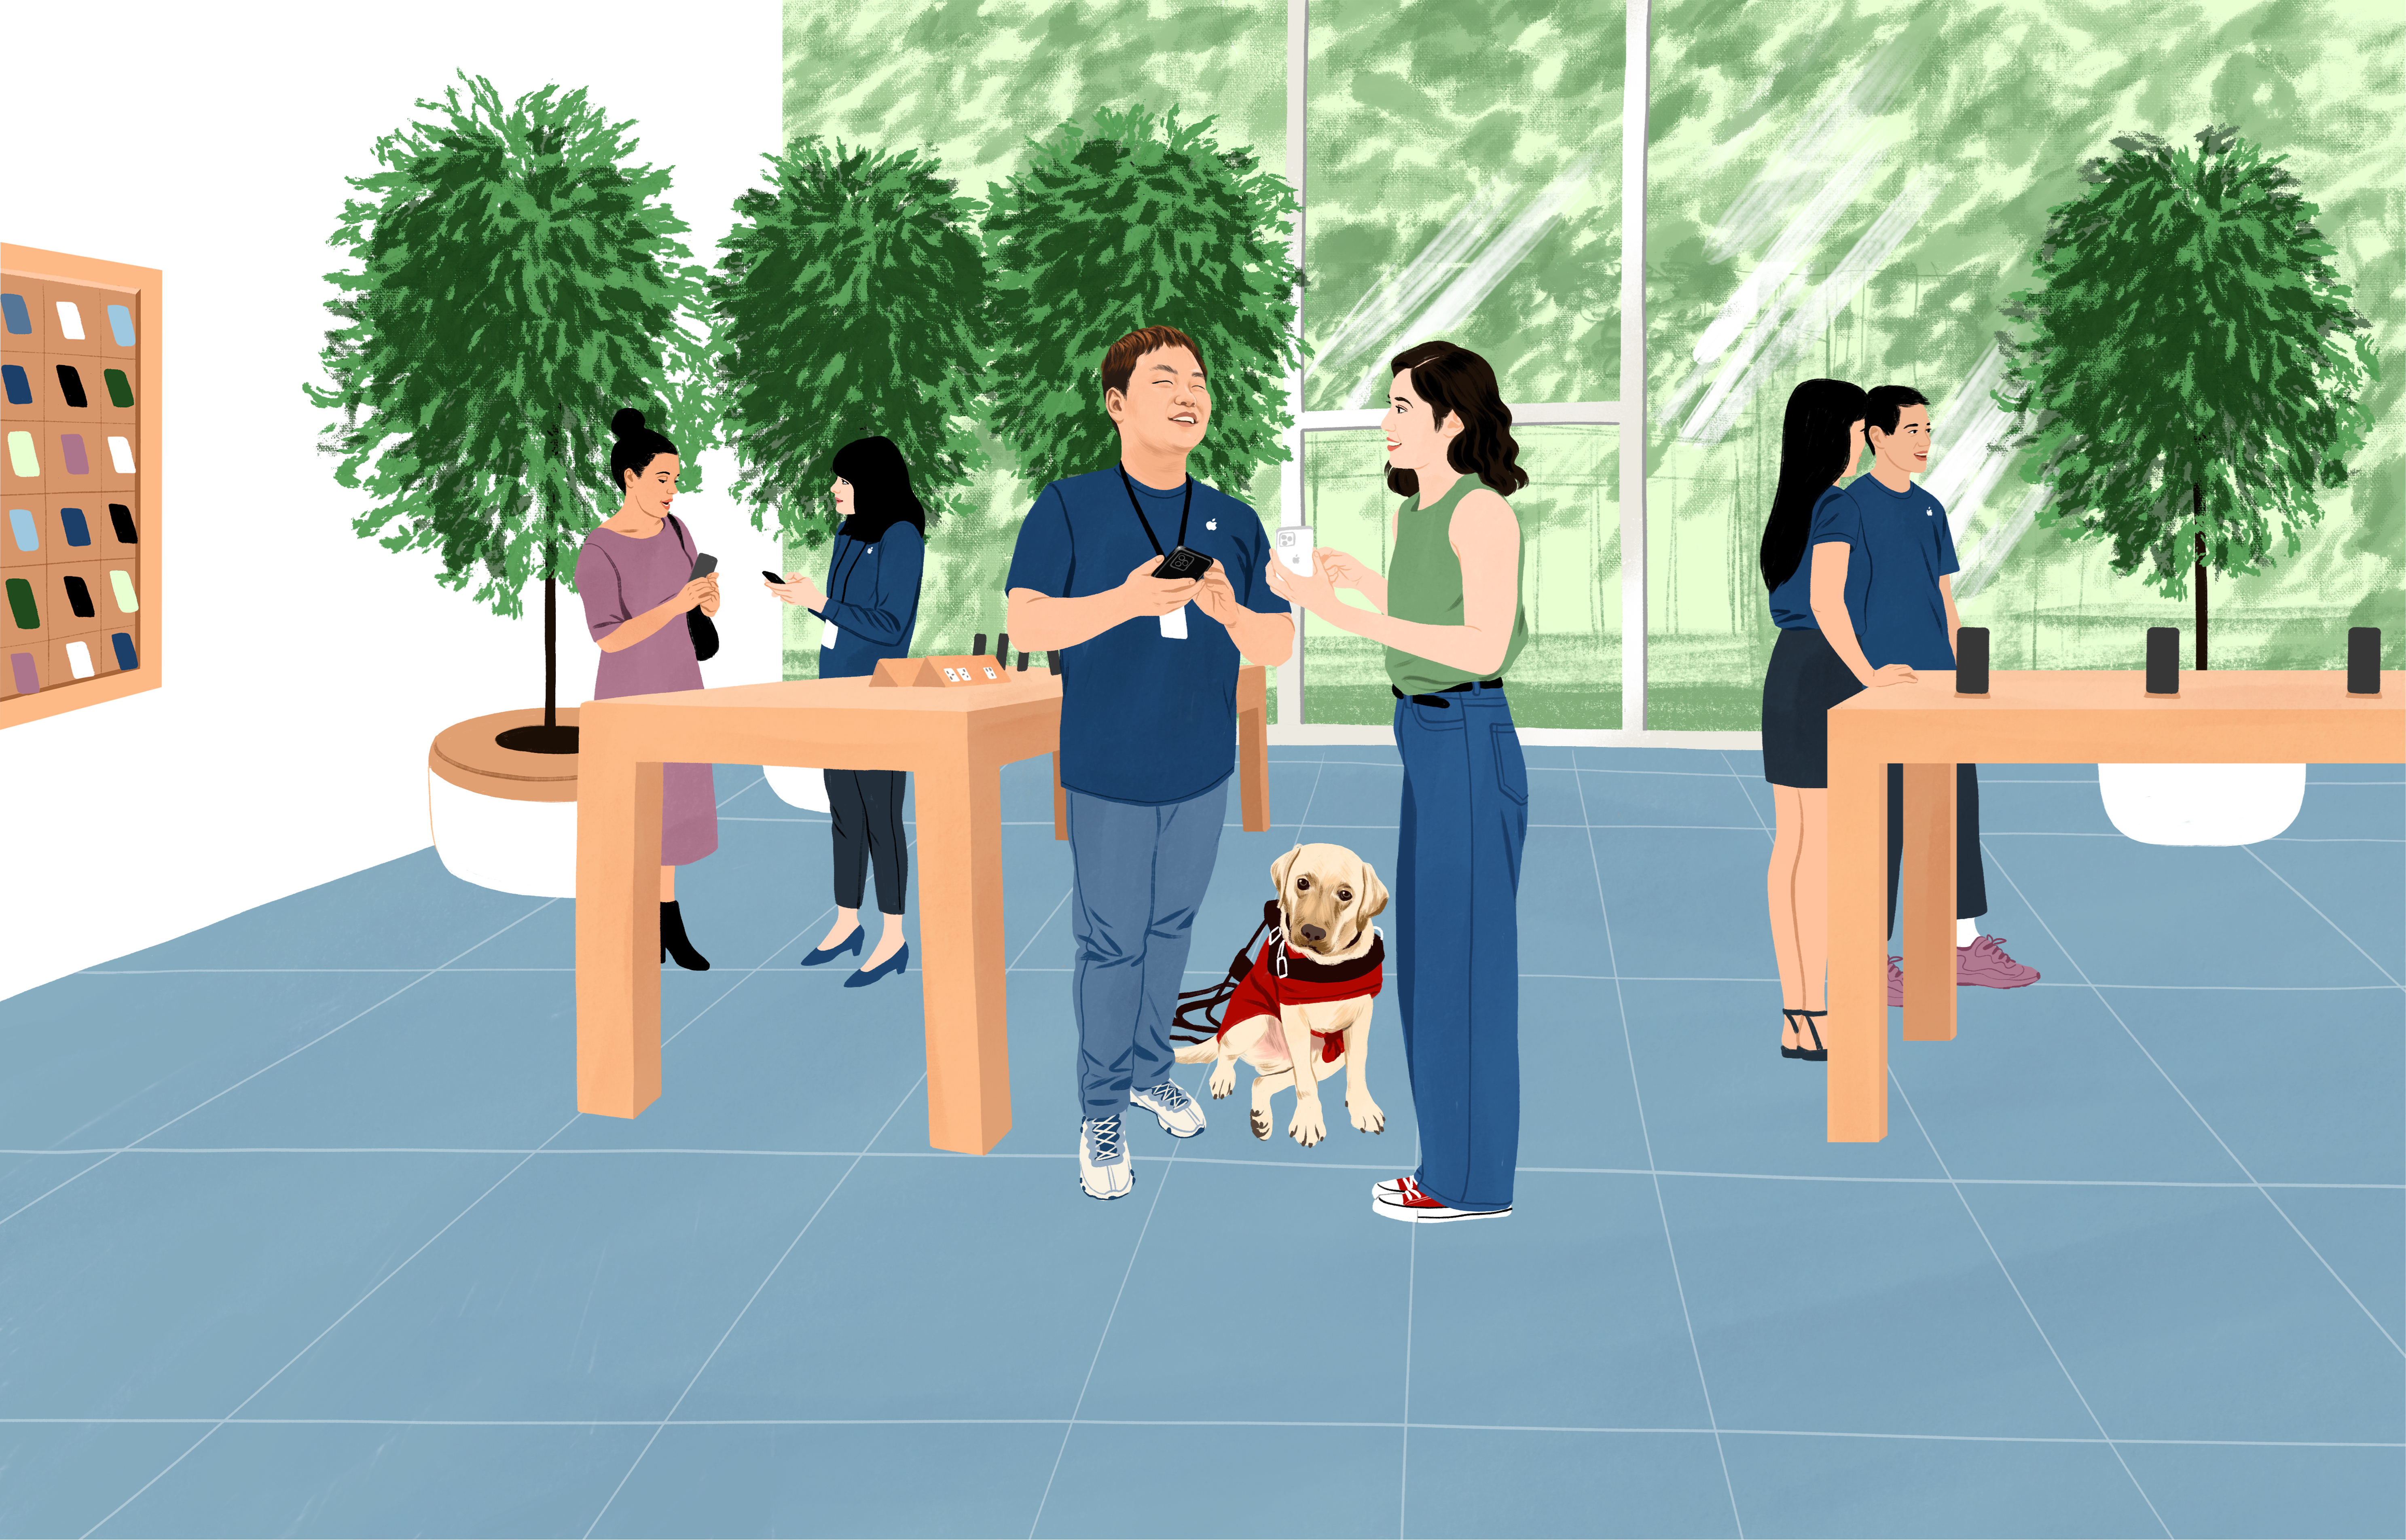 Apple Storeで働くウィリアムがiPhoneを手に、お客さまから質問を受けている。彼の傍には盲導犬が座っている。